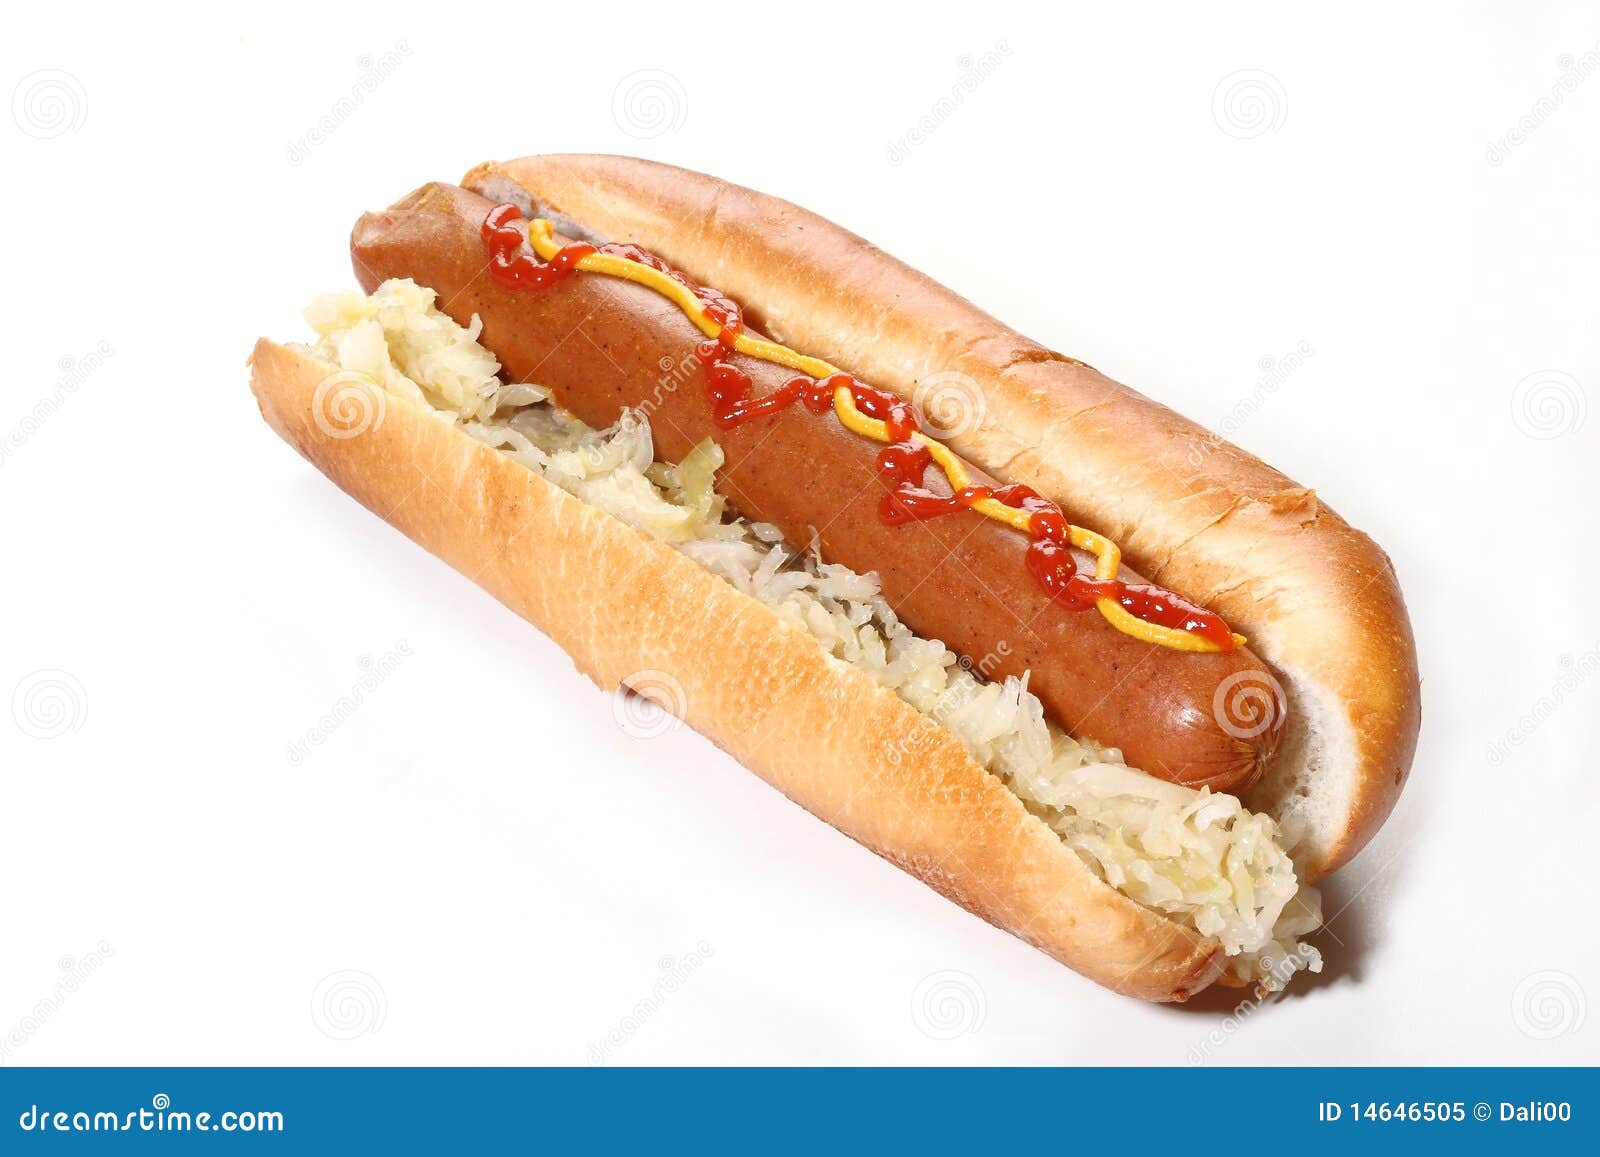 Hot dog stock image. Image of closeup, calorie, dinner - 14646505